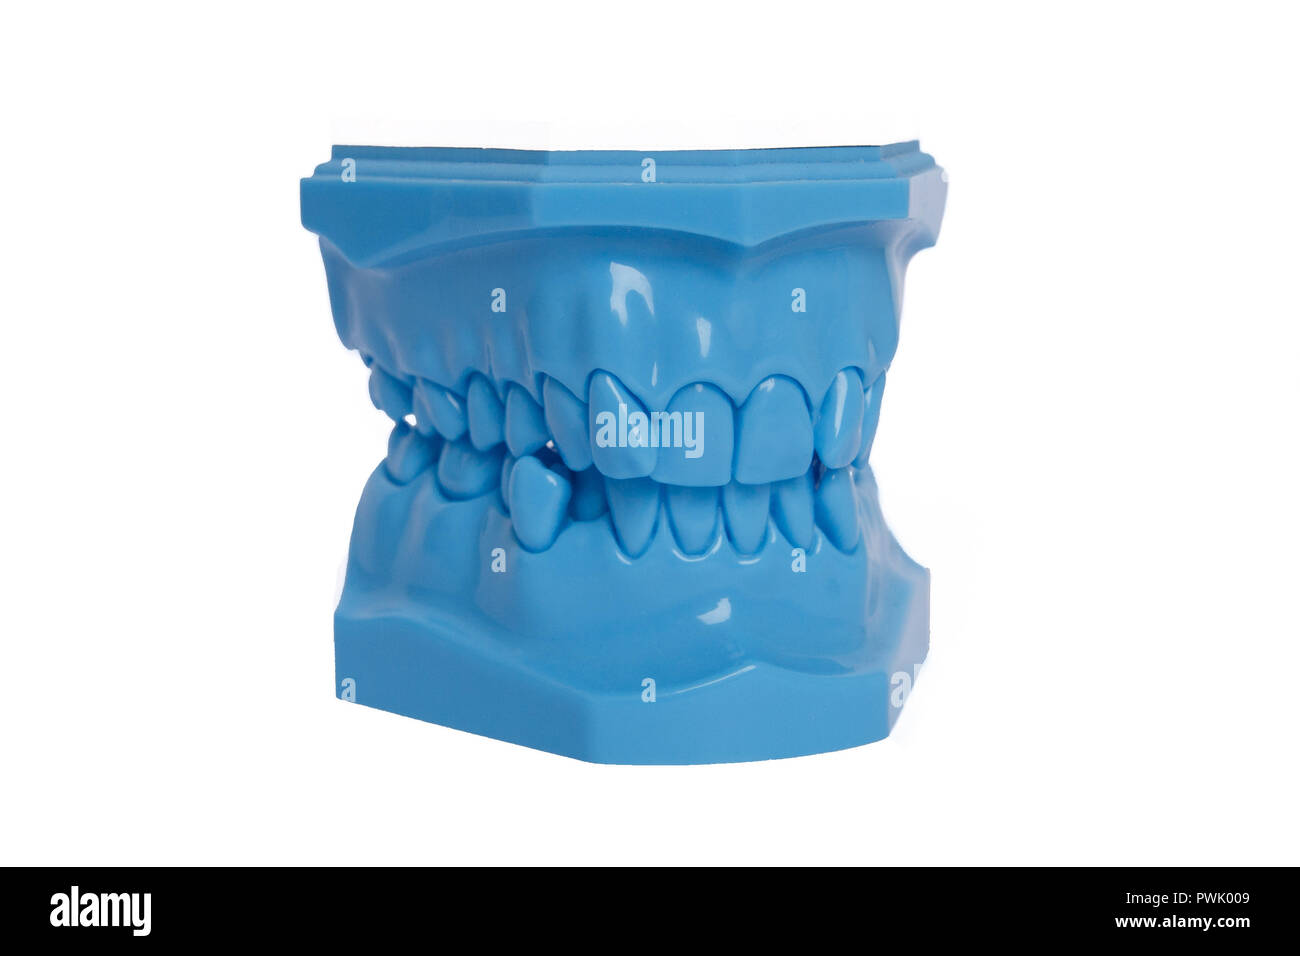 Blu denti ortodontico modello utilizzato in odontoiatria per la dimostrazione e la finalità educativa. Foto Stock